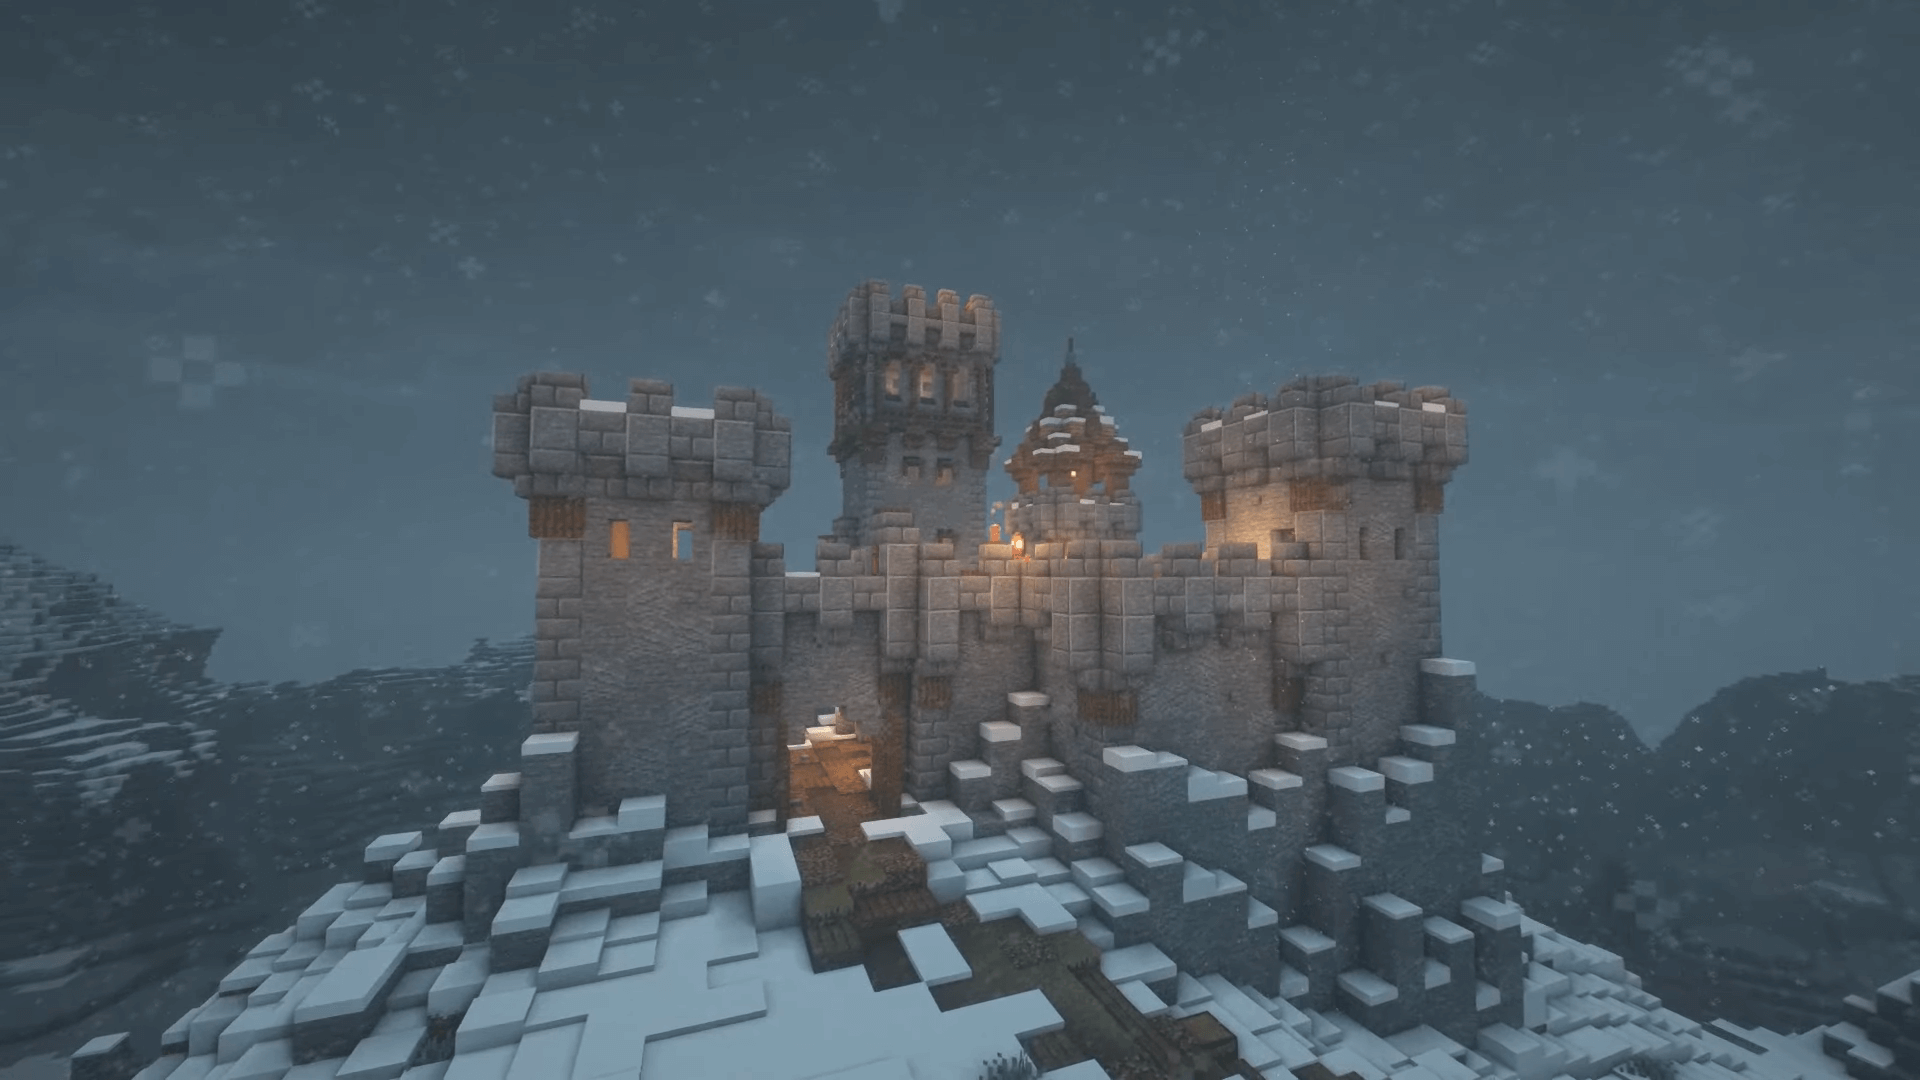 minecraft castle ideas on mountain